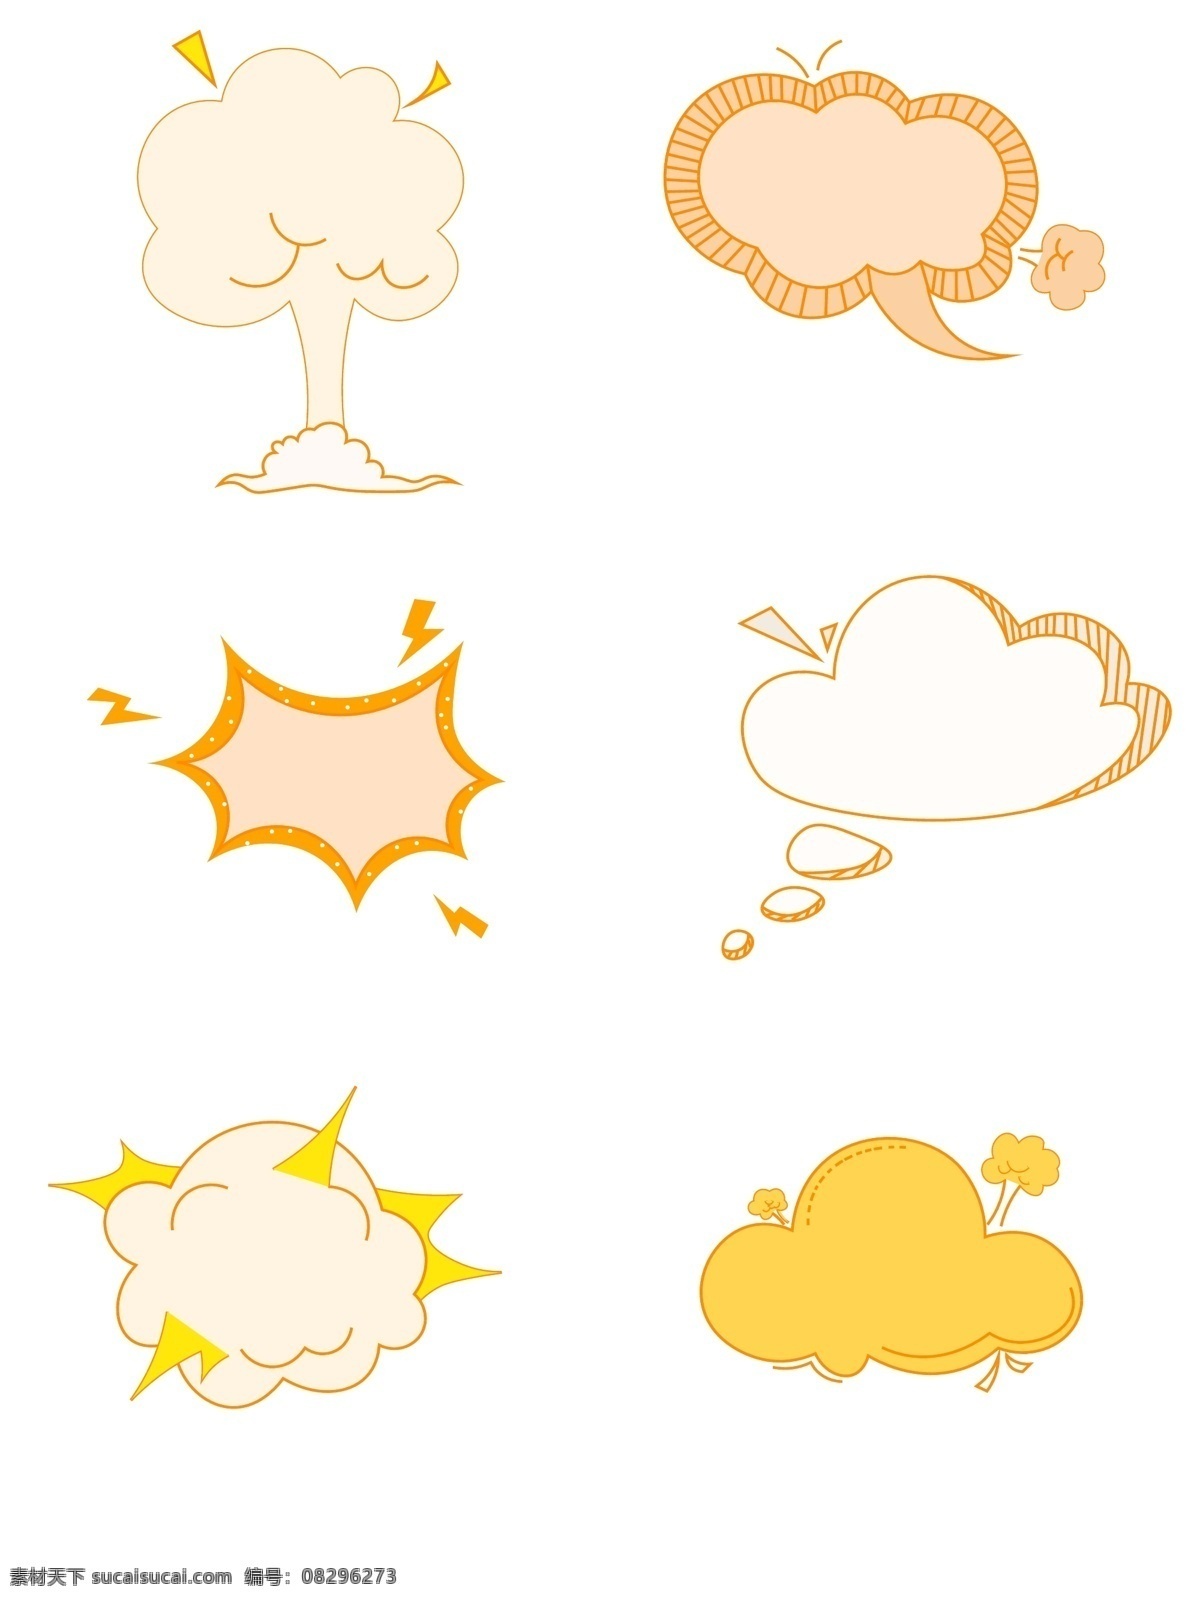 暖 色系 爆炸 云 会话 气泡 暖色系 会话气泡 卡通可爱 元素 套图 爆炸云